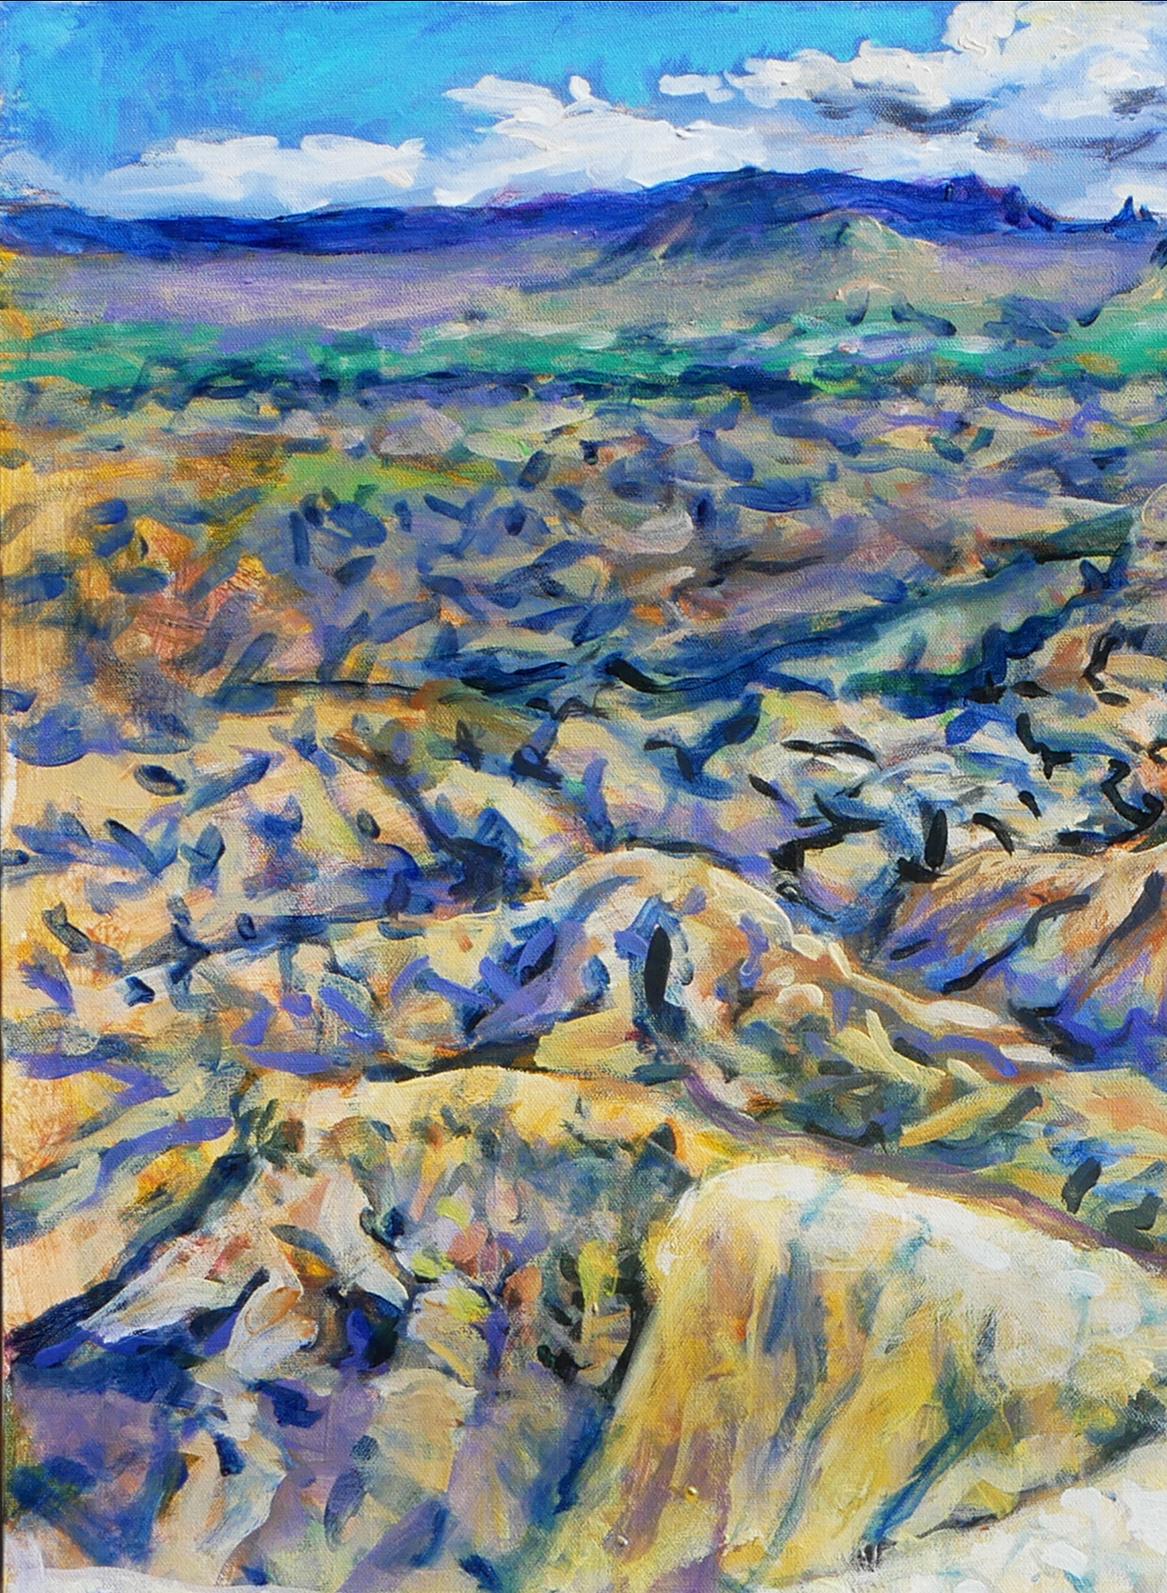 Terlingua Canyon 1 - Peinture de paysage abstrait contemporain aux tons pastel - Abstrait Painting par Earl Staley